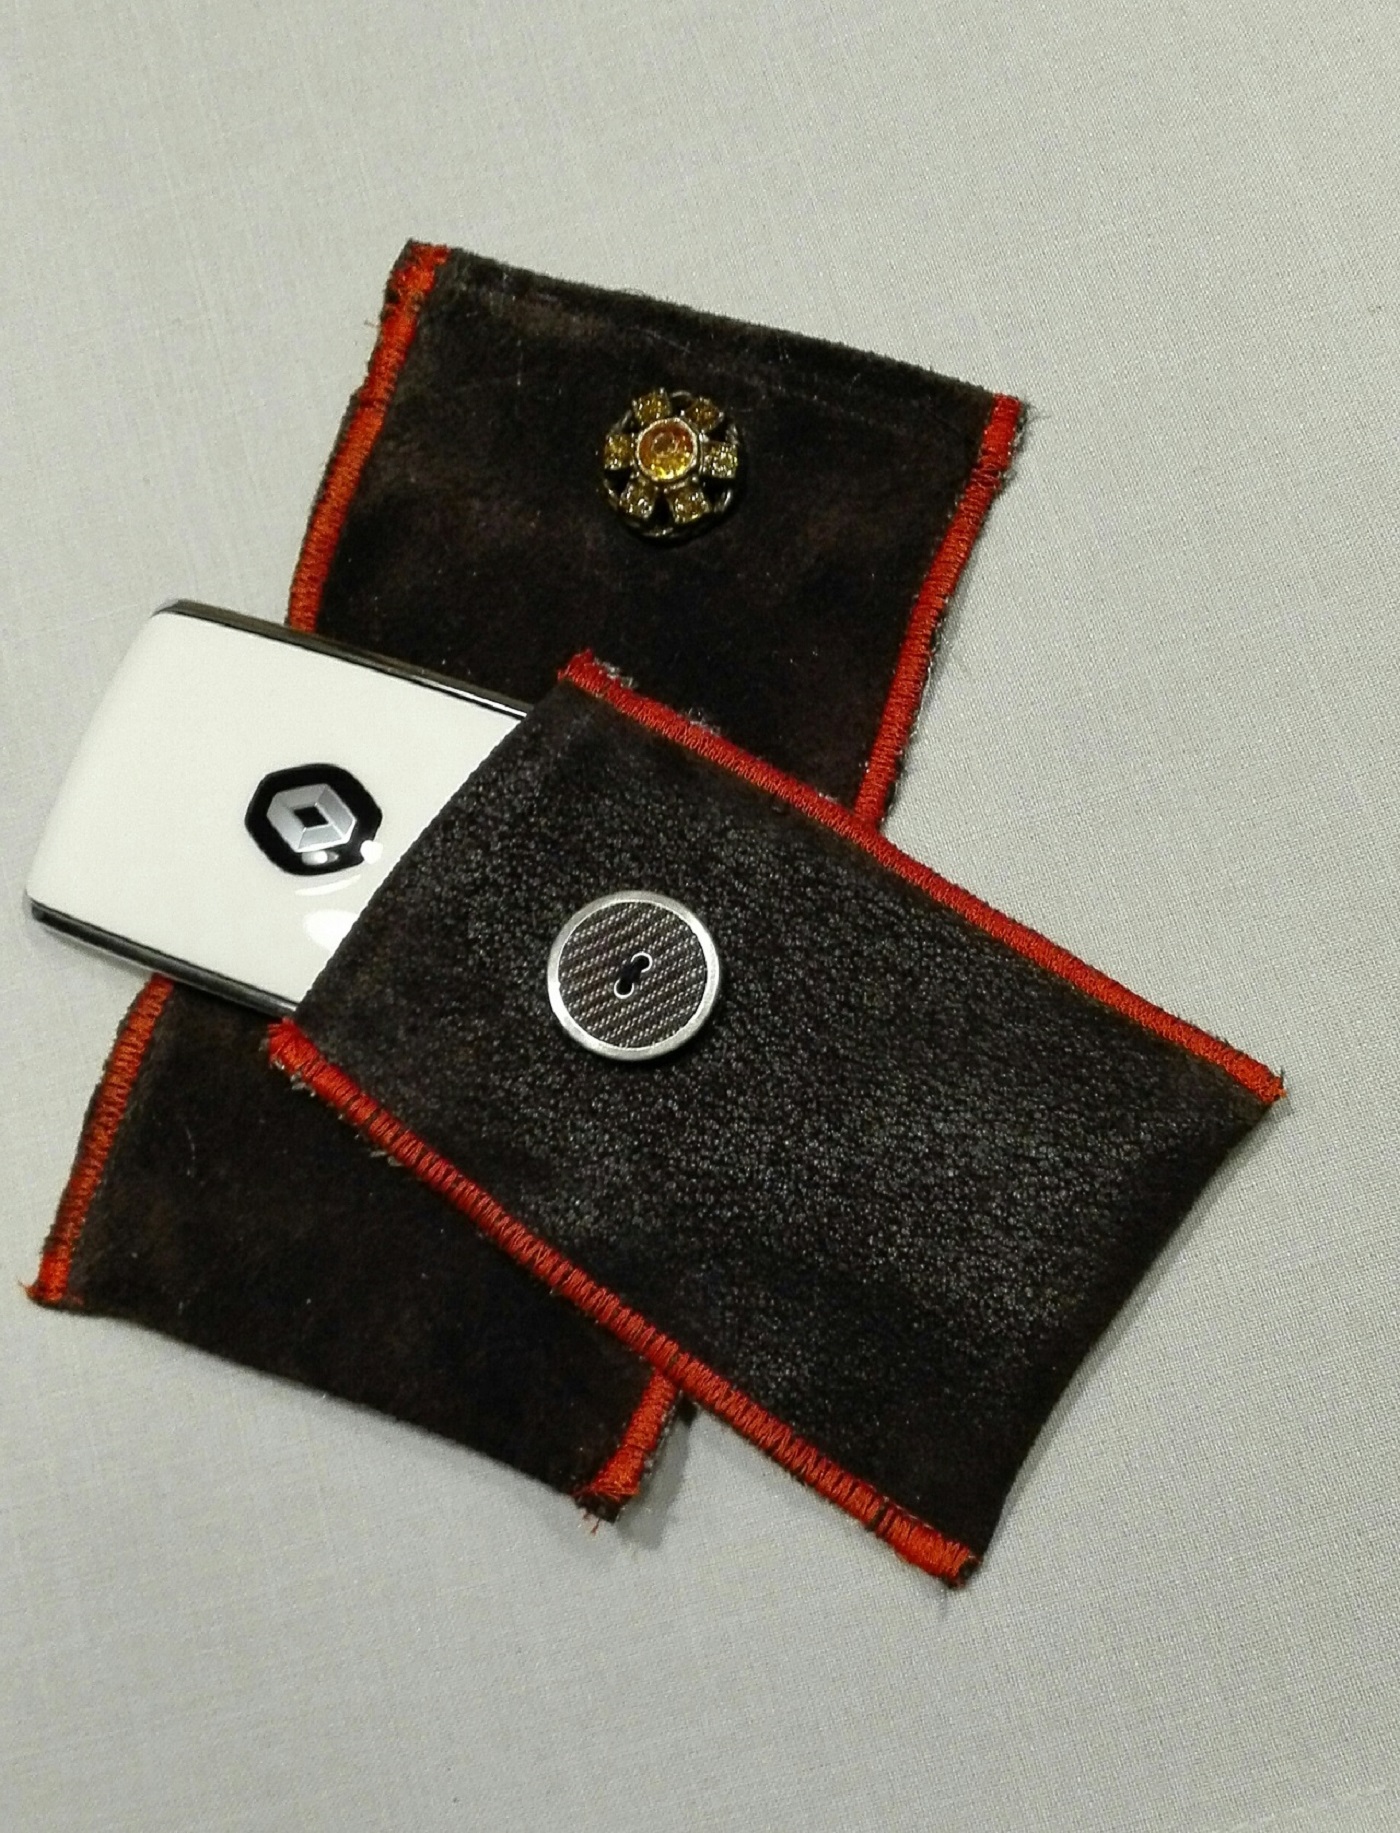 Kadjar Tasche und Huawei Tasche in Leder